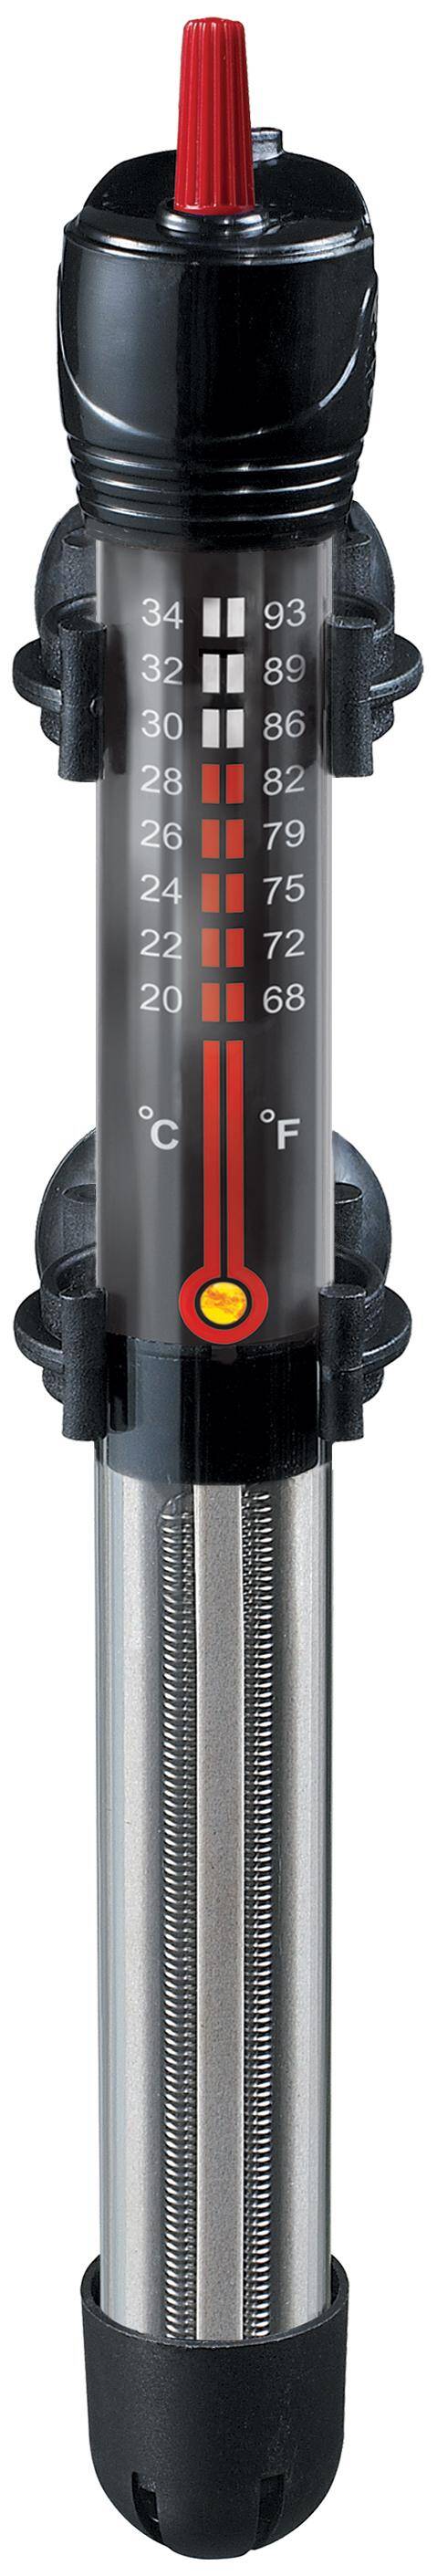 AquaT 25W Heizgerät mit Thermostat Happet (S-G025XI)